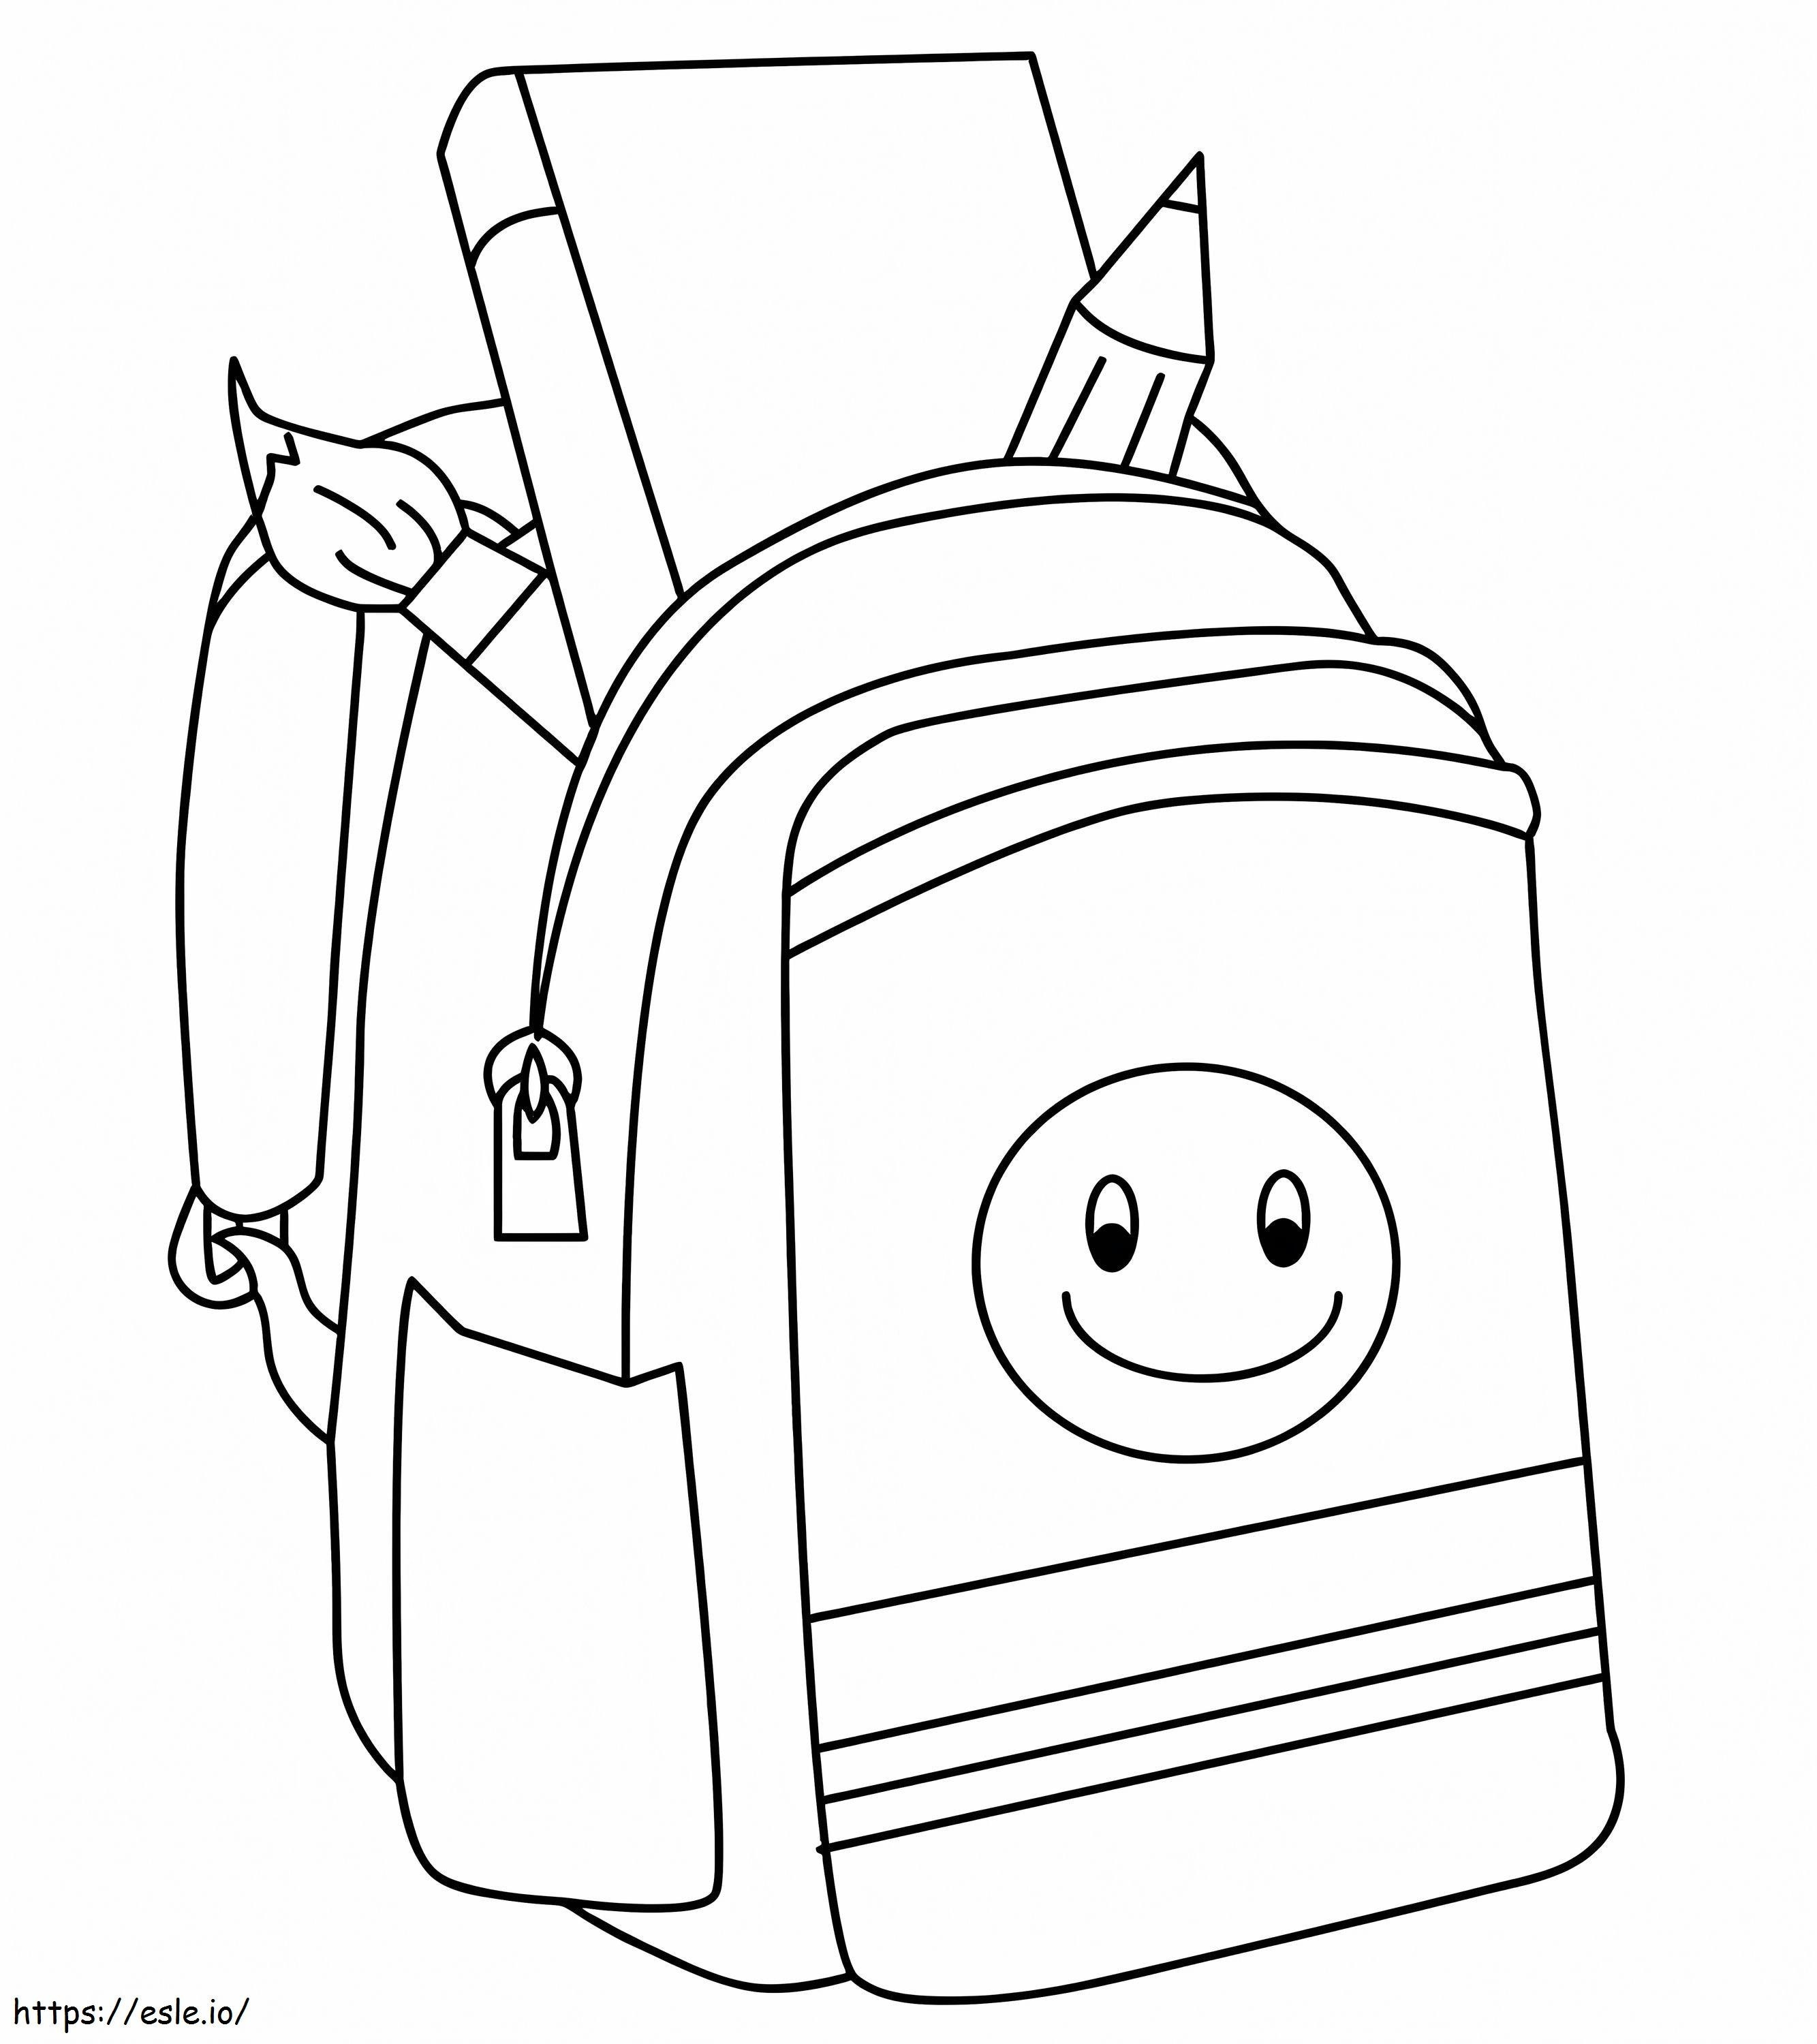 O saco da escola para colorir